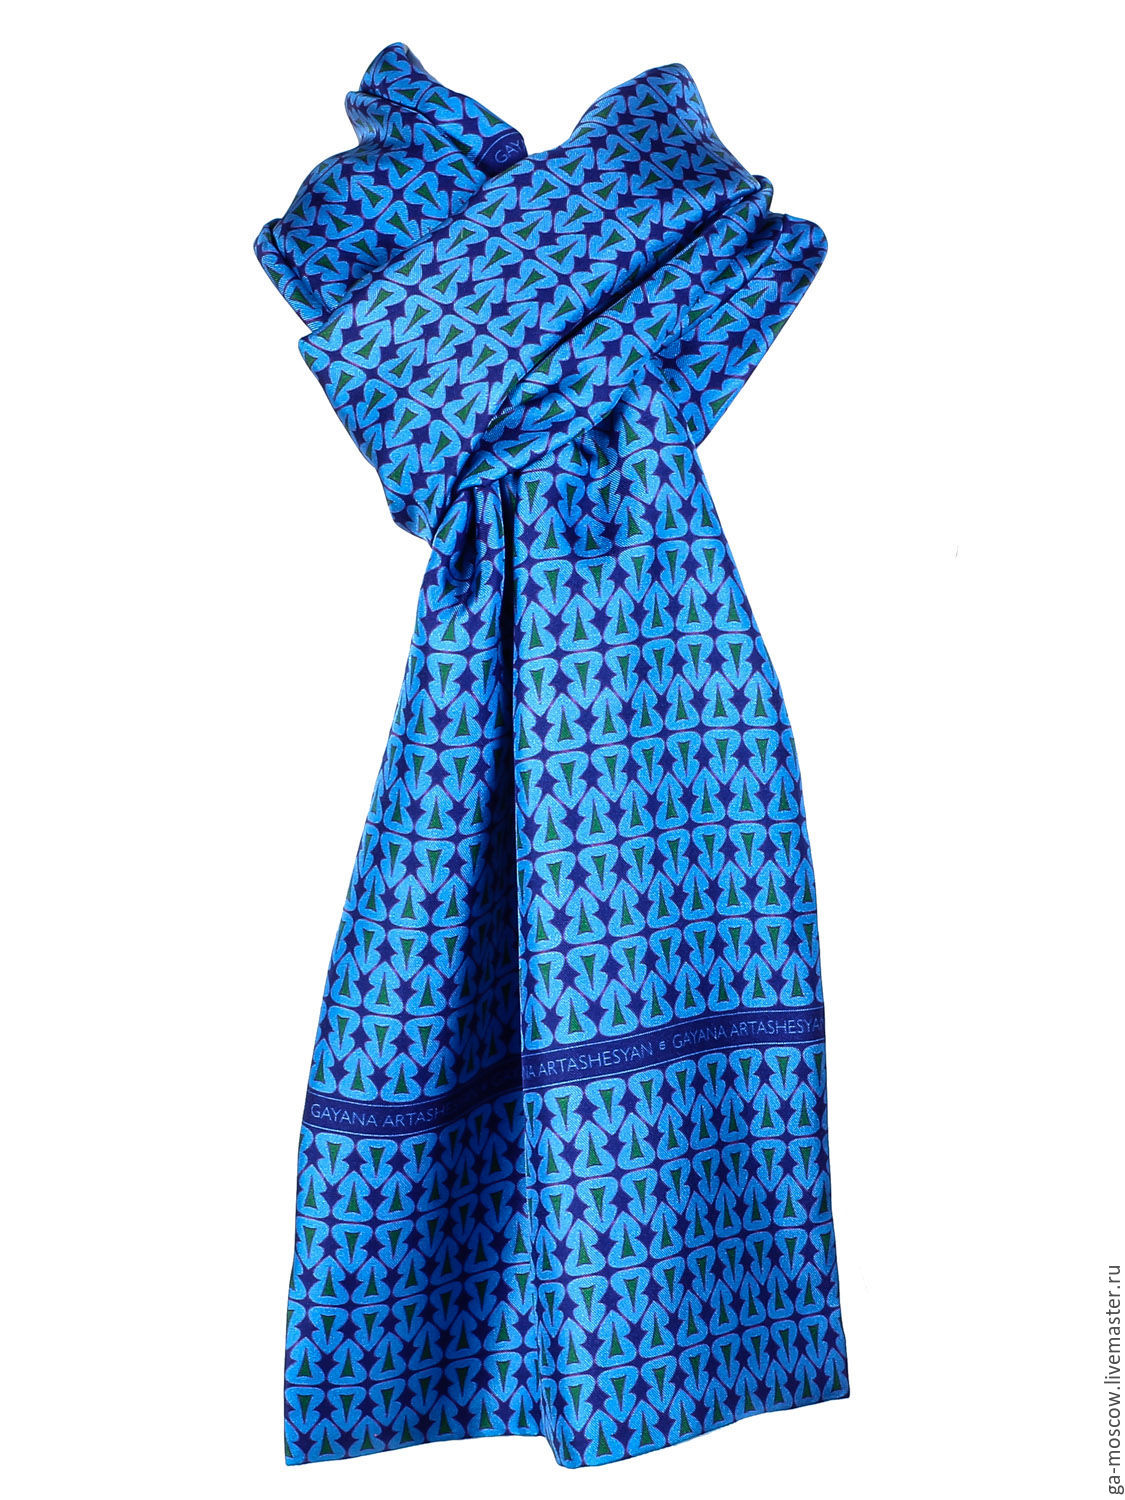 Мужской синий шарф